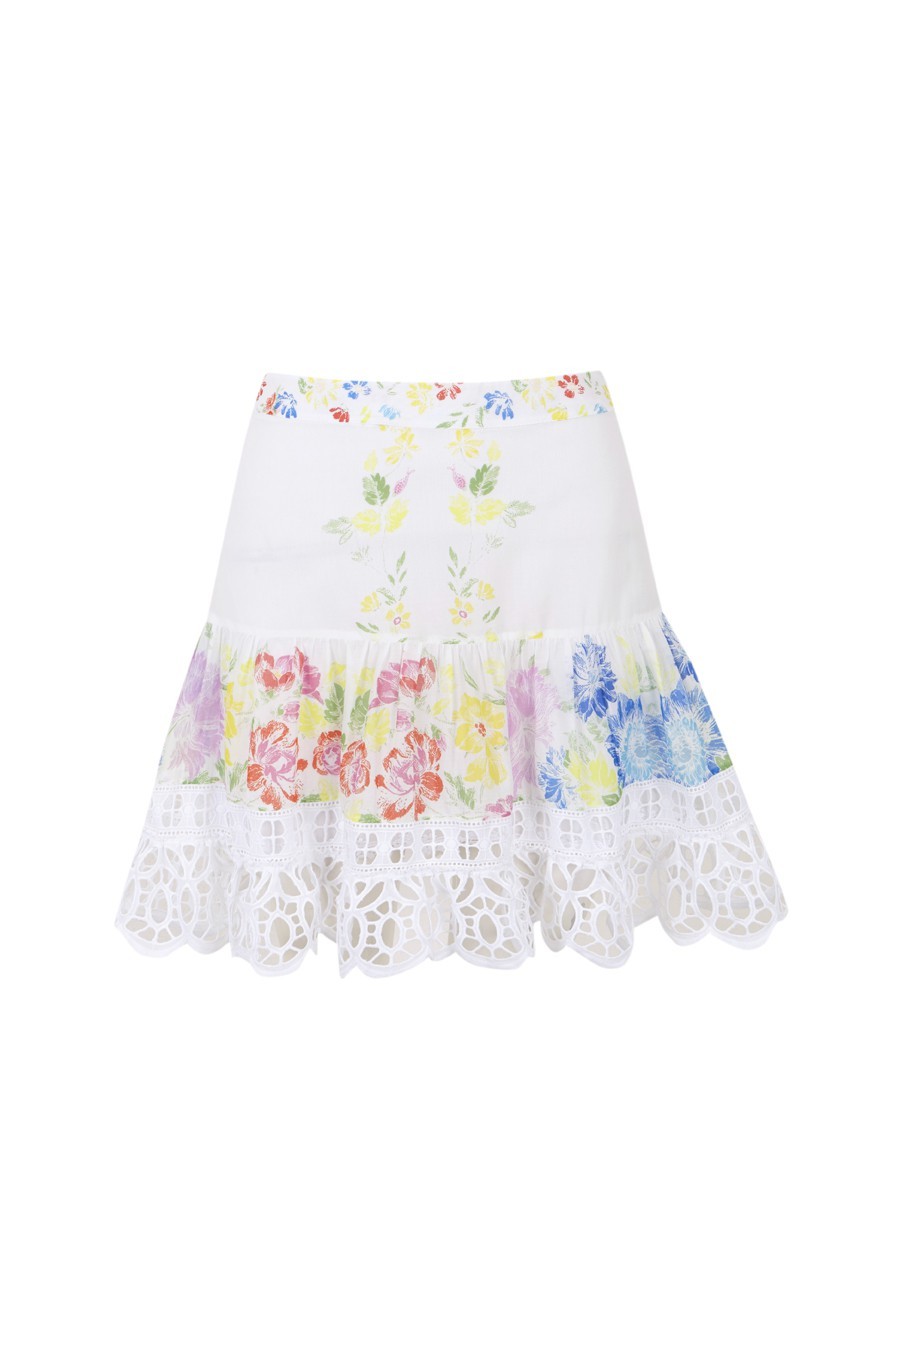 Charo Ruiz Ibiza Short Skirt Elbis - Premium Skirts from Charo Ruiz - Just $470! Shop now at Marina St Barth